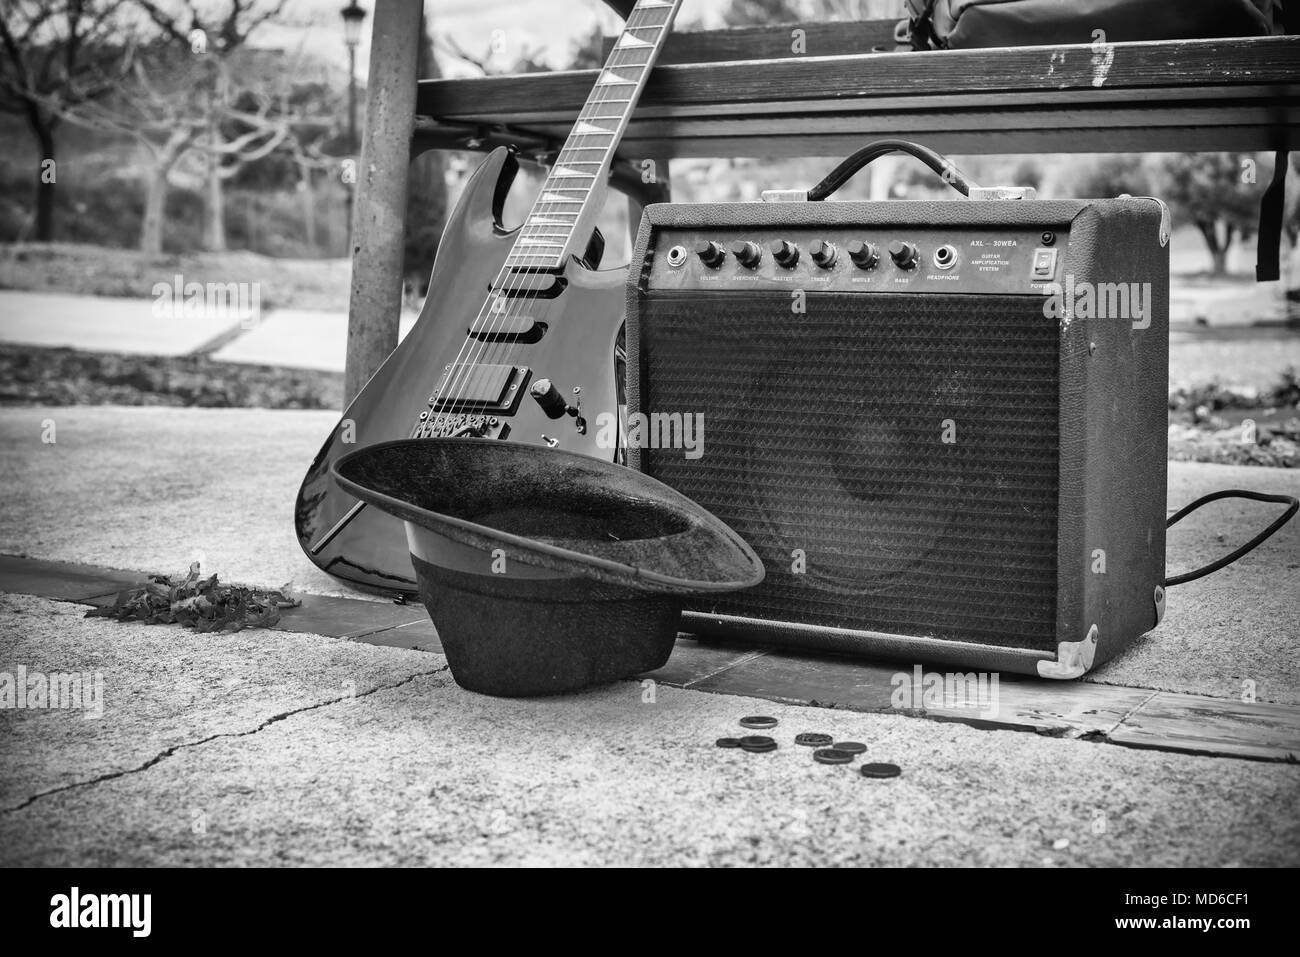 Alte Gitarre und Verstärker neben einer Parkbank, eine Straße Musik Konzept  Stockfotografie - Alamy